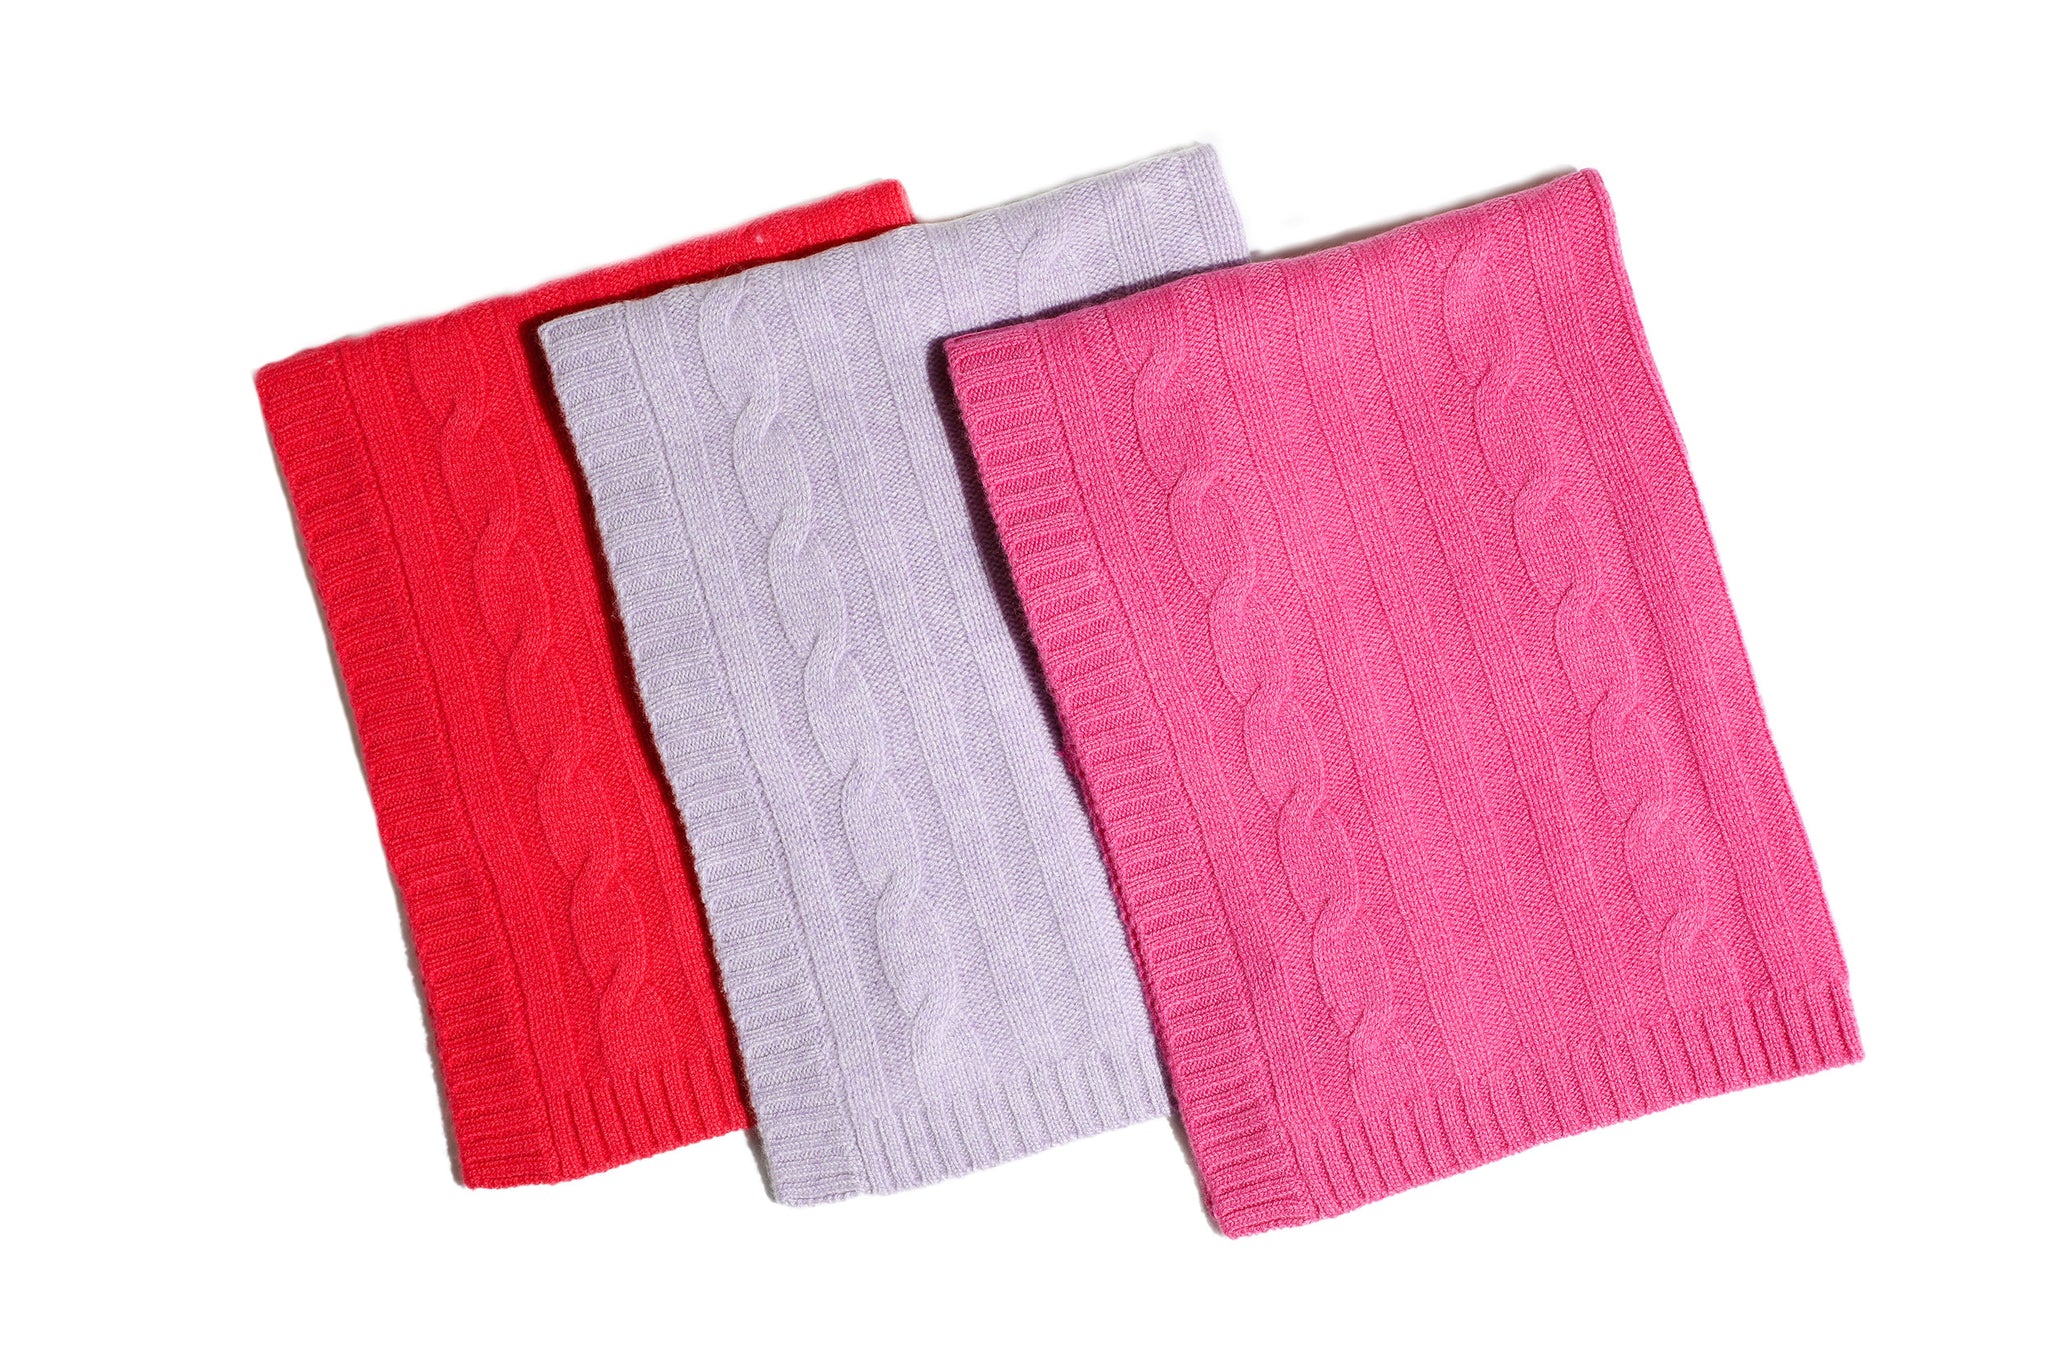 Cashmere Blanket - Orange, Purple, Lavender or Pink - Canine Styles - Dog Blanket - 4 Color Options